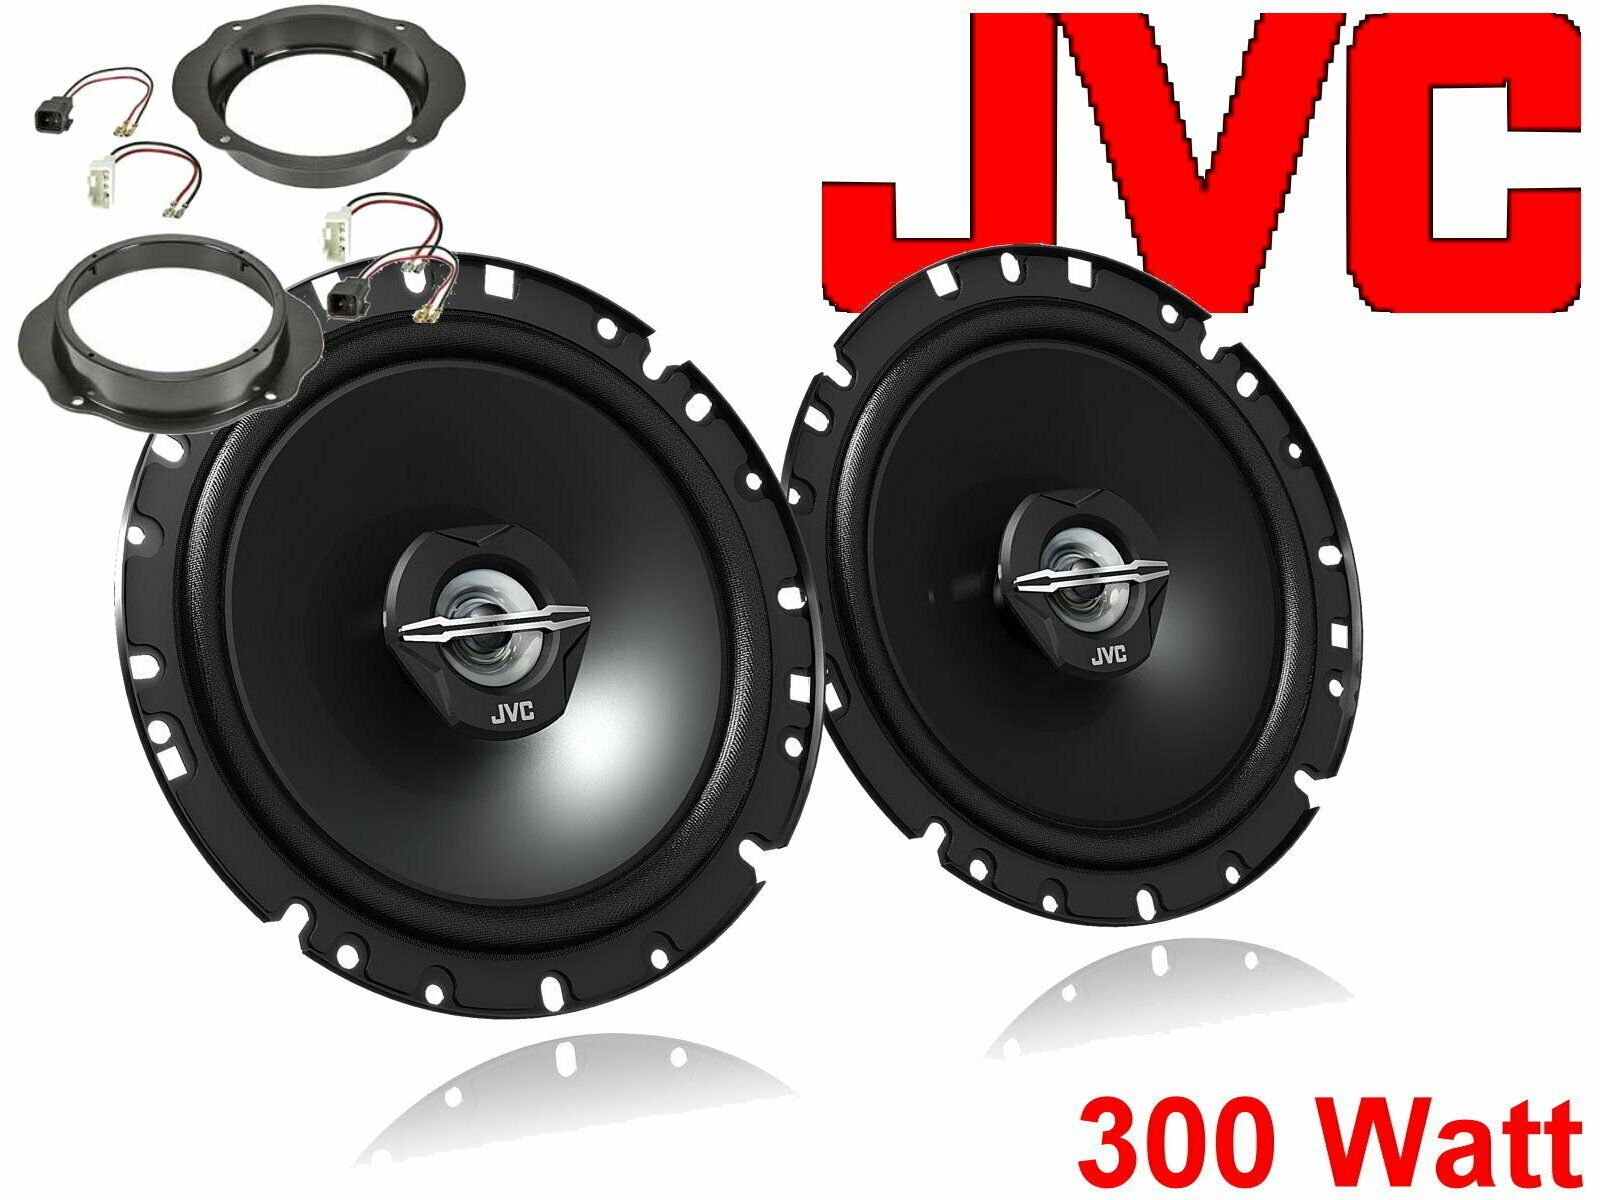 DSX JVC 300 W passend für Ford Kuga ab 2008 Lautsprech Auto-Lautsprecher (30 W)